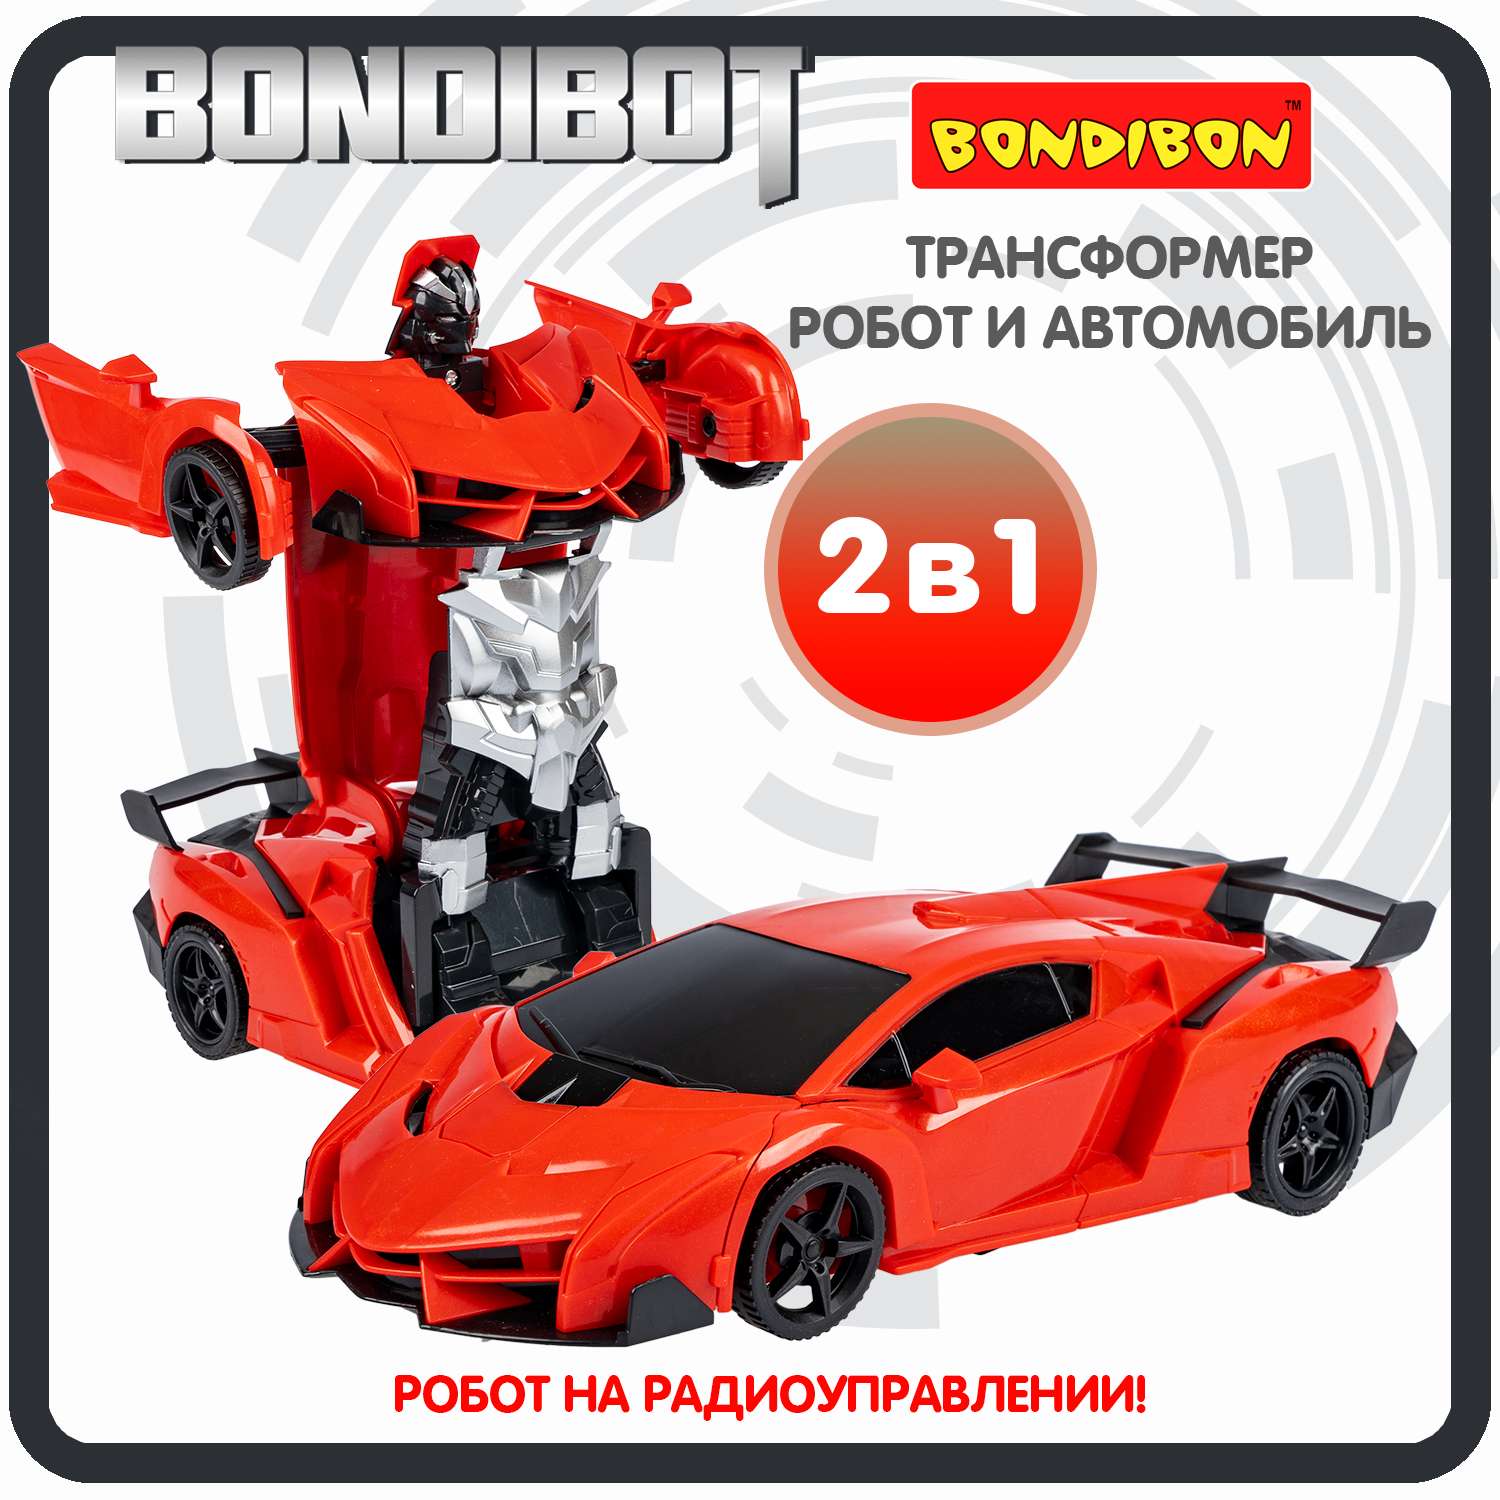 Трансформер BONDIBON BONDIBOT 2в1 робот- гоночный автомобиль со световыми эффектами красного цвета 1:18 - фото 1